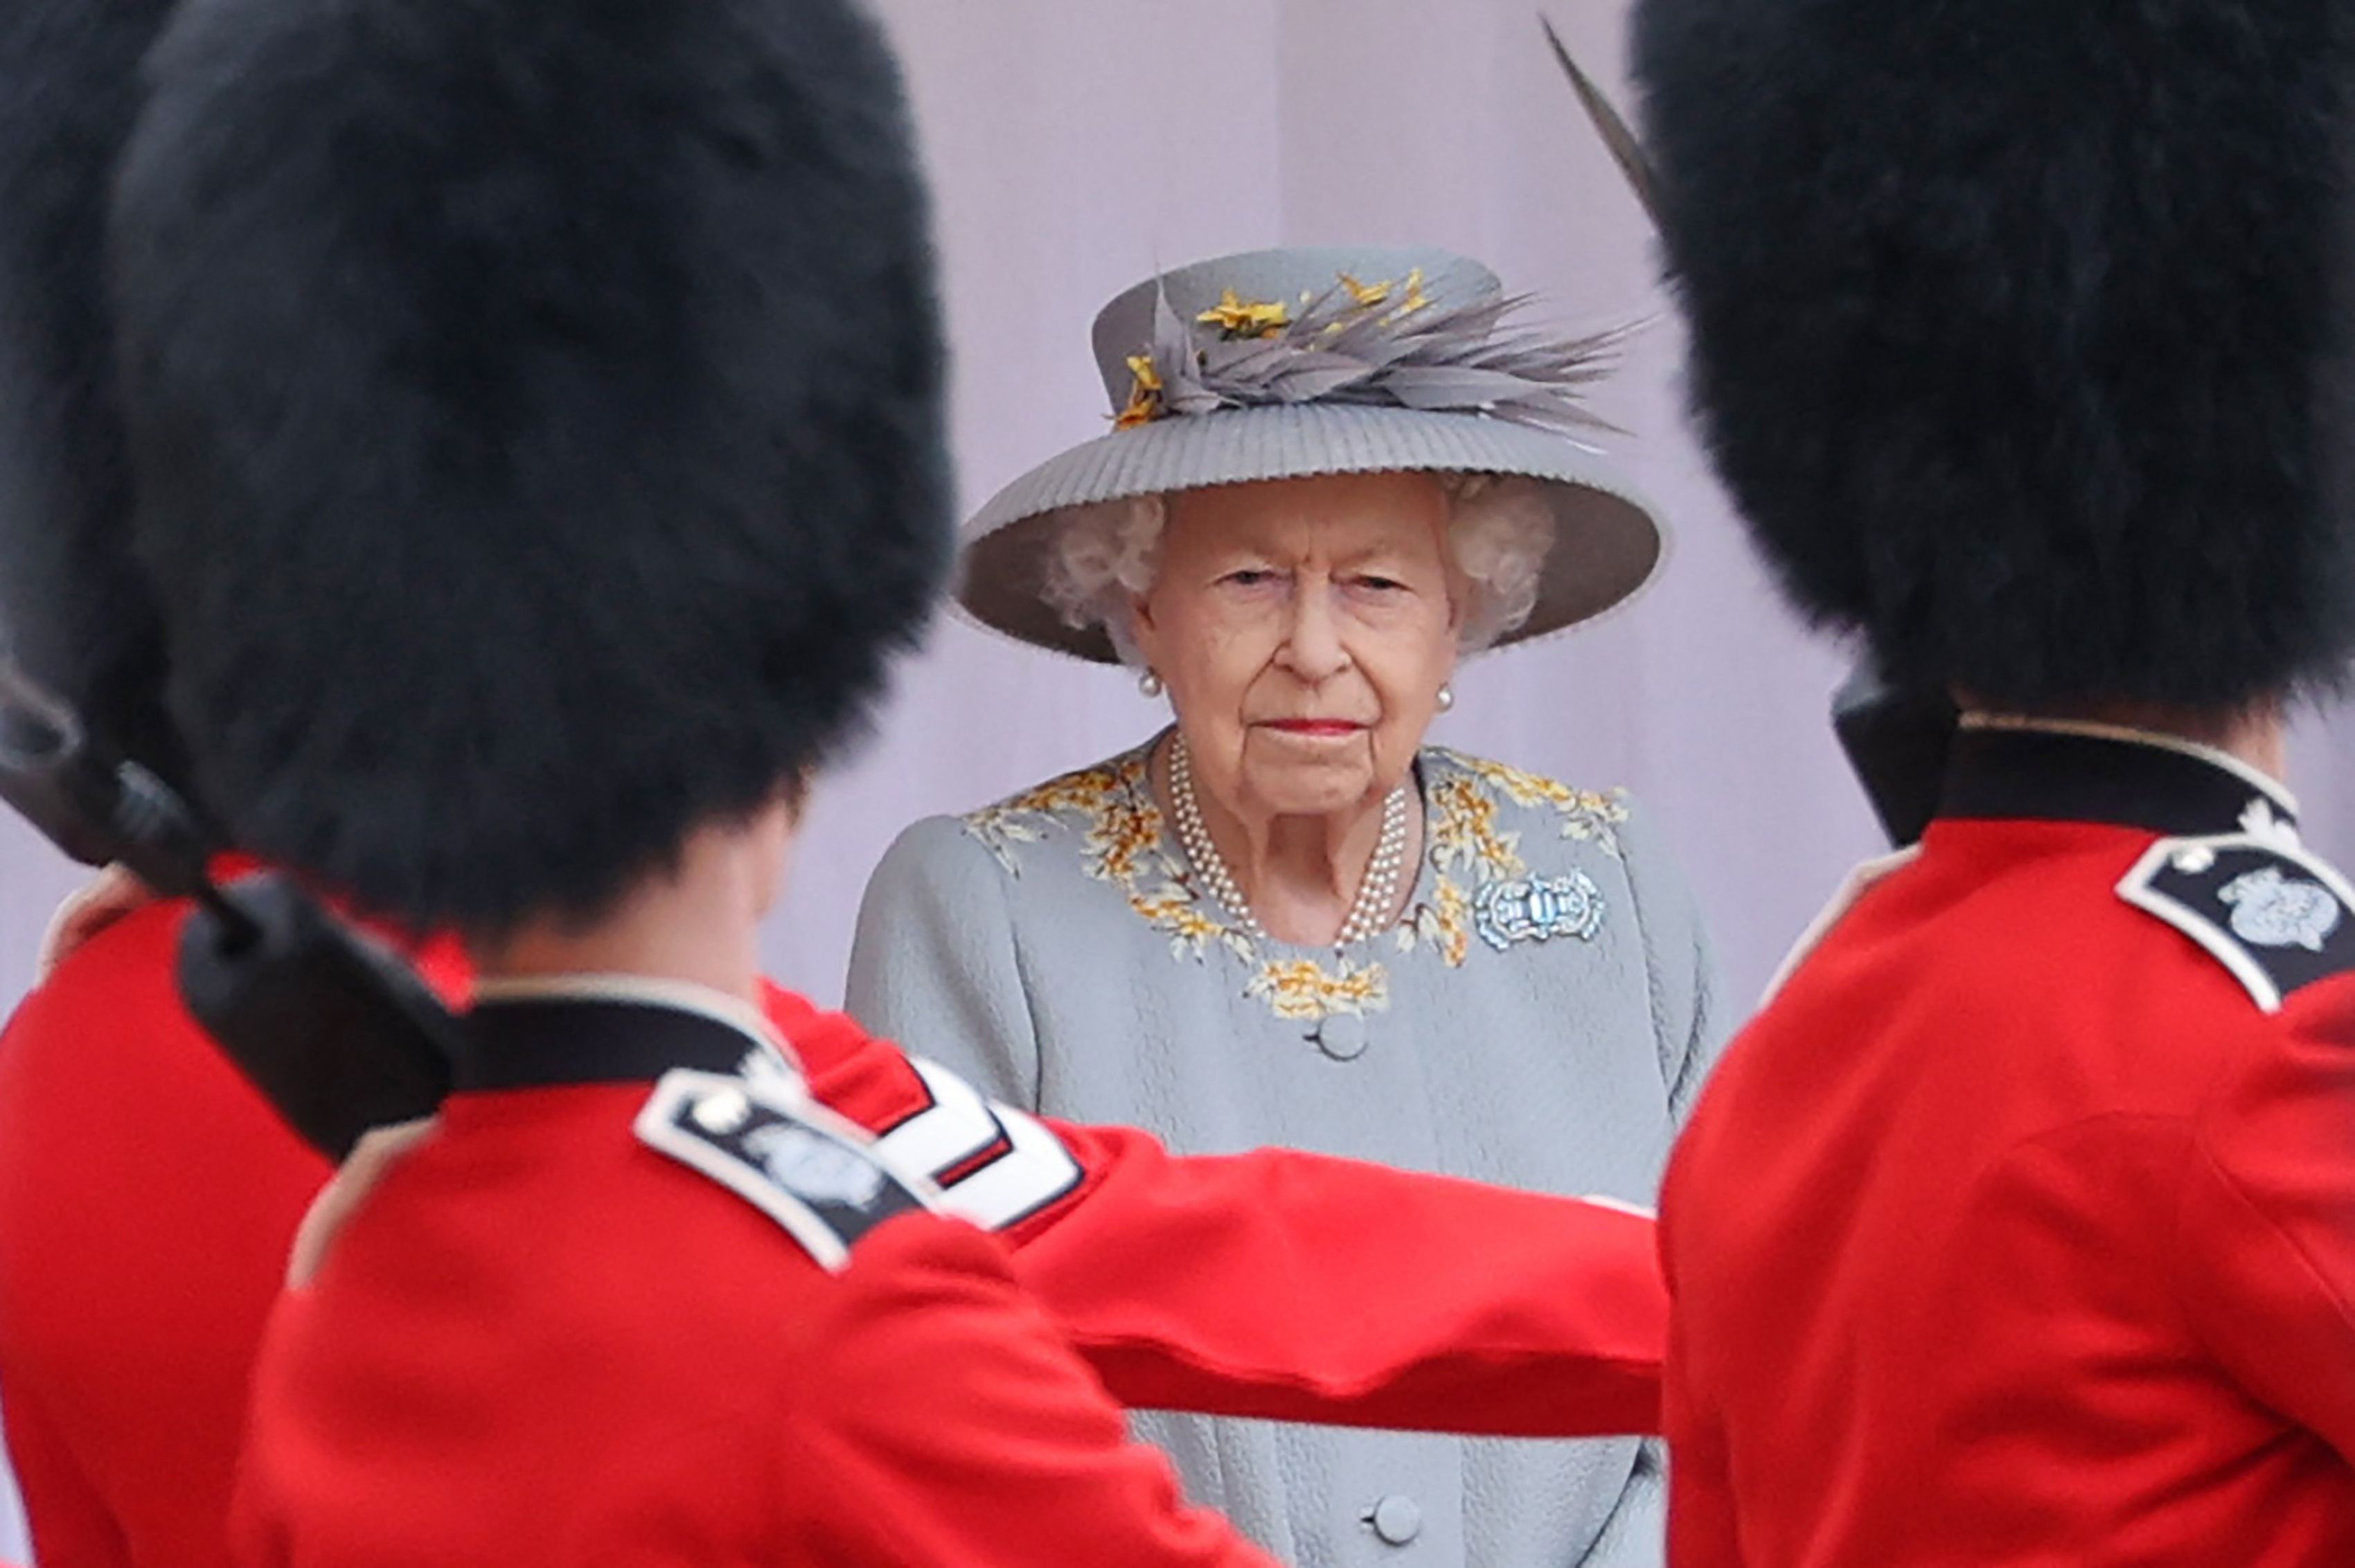 Isabel II ya no guardará silencio cuando se hable de supuestas falsedades en la familia real. (Foto Prensa Libre: AFP)